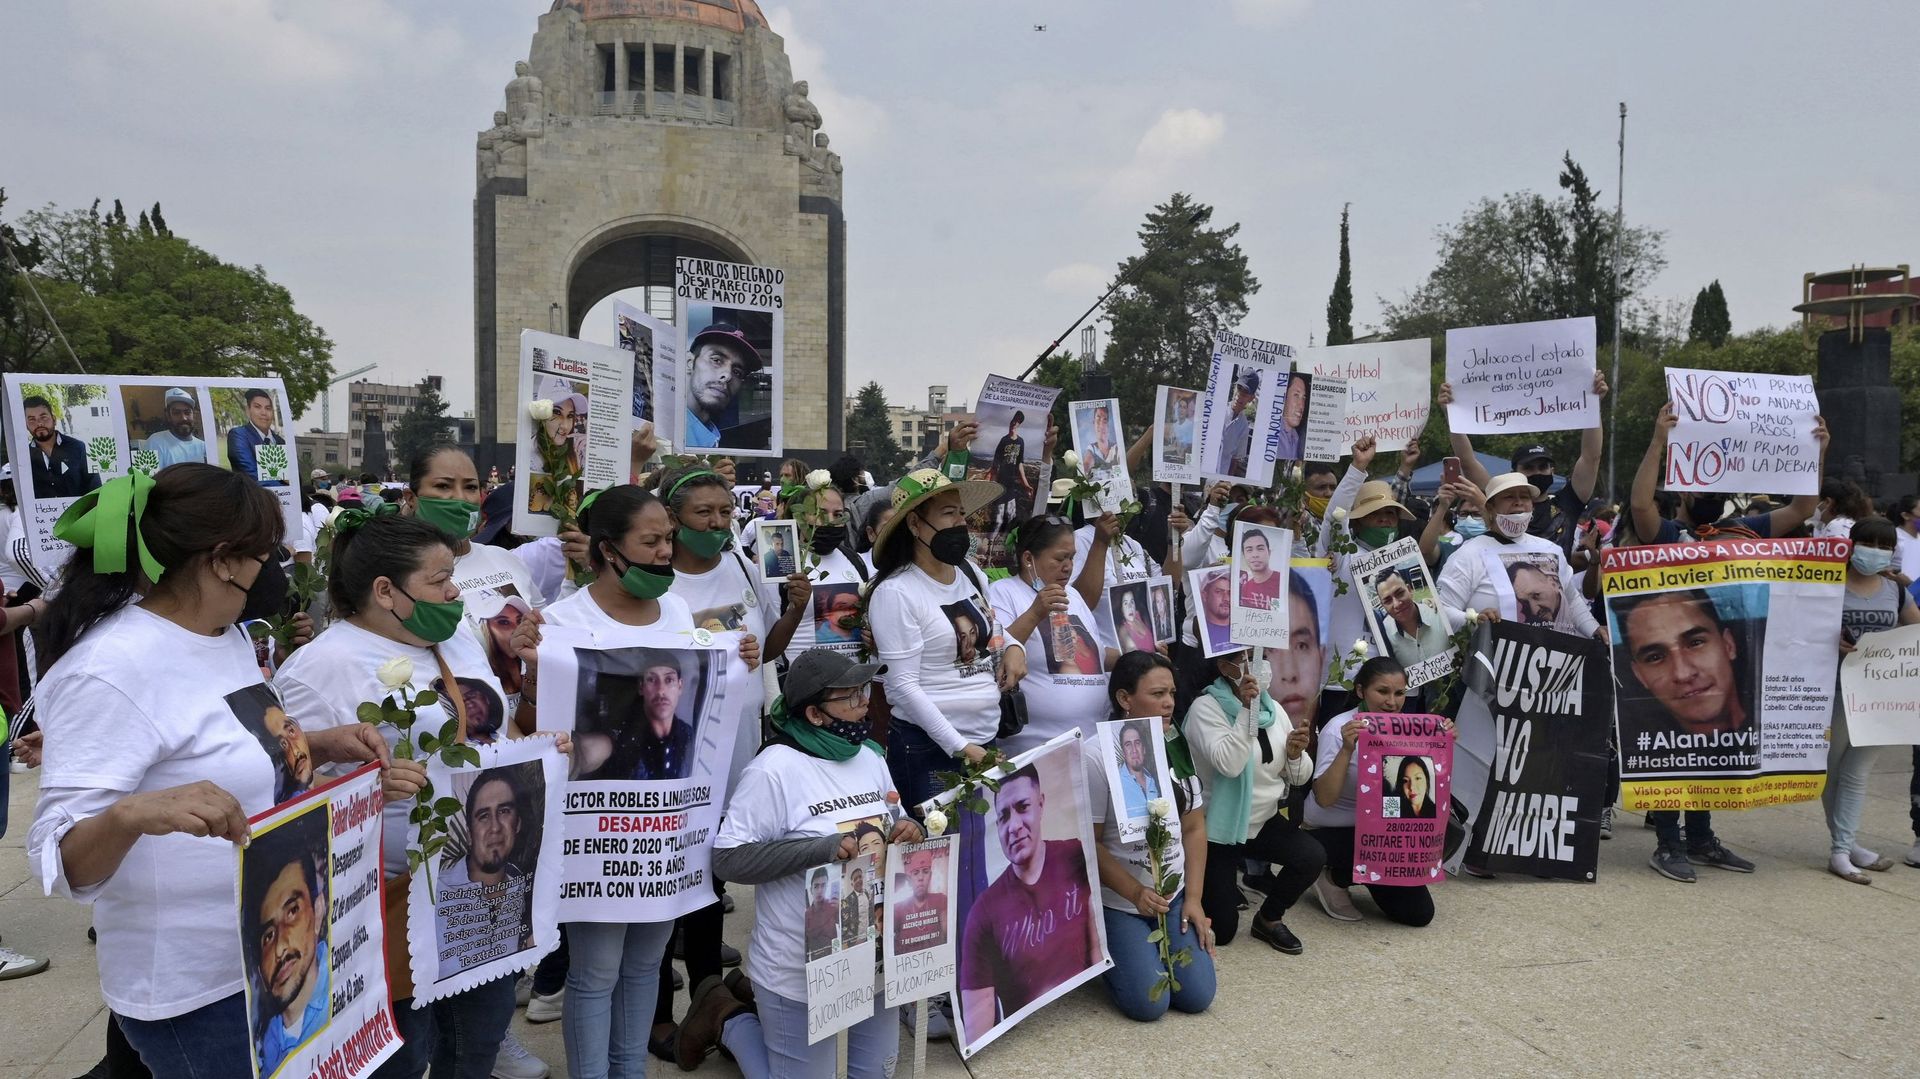 le Mexique comptabilise 80.500 personnes disparues, selon les chiffres officiels.